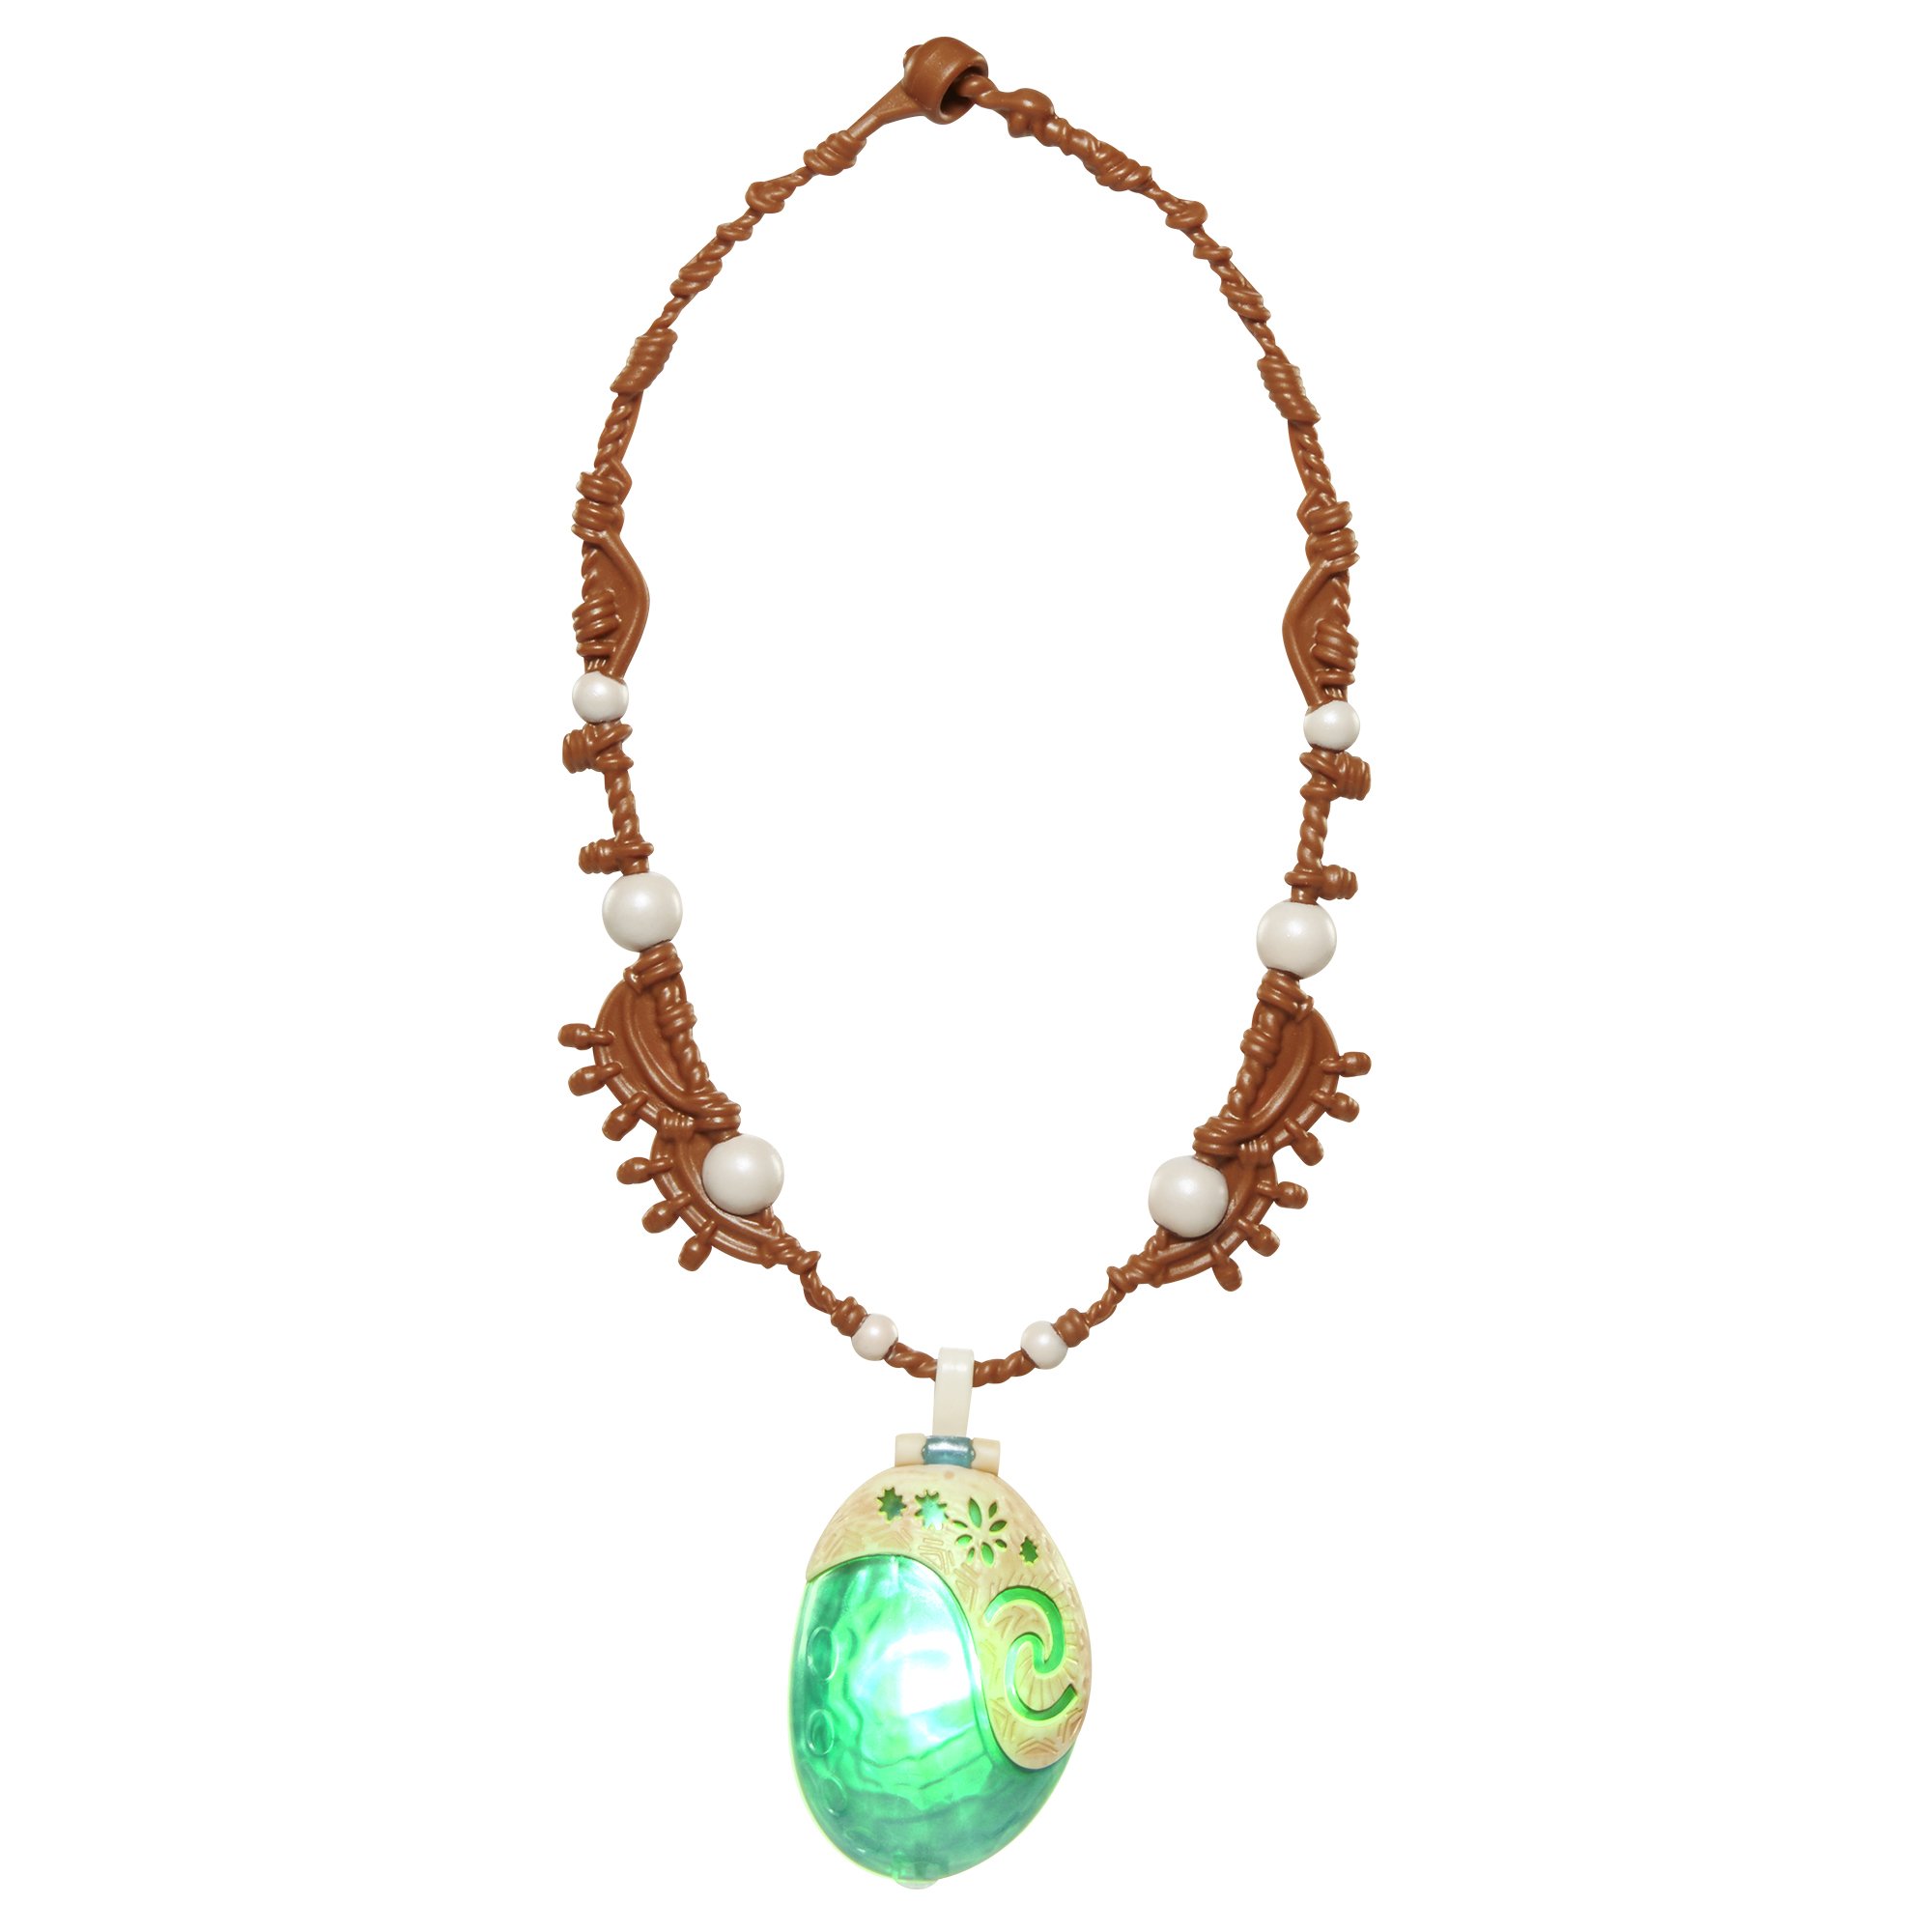 Moana's Necklace | Disney Wiki | Fandom